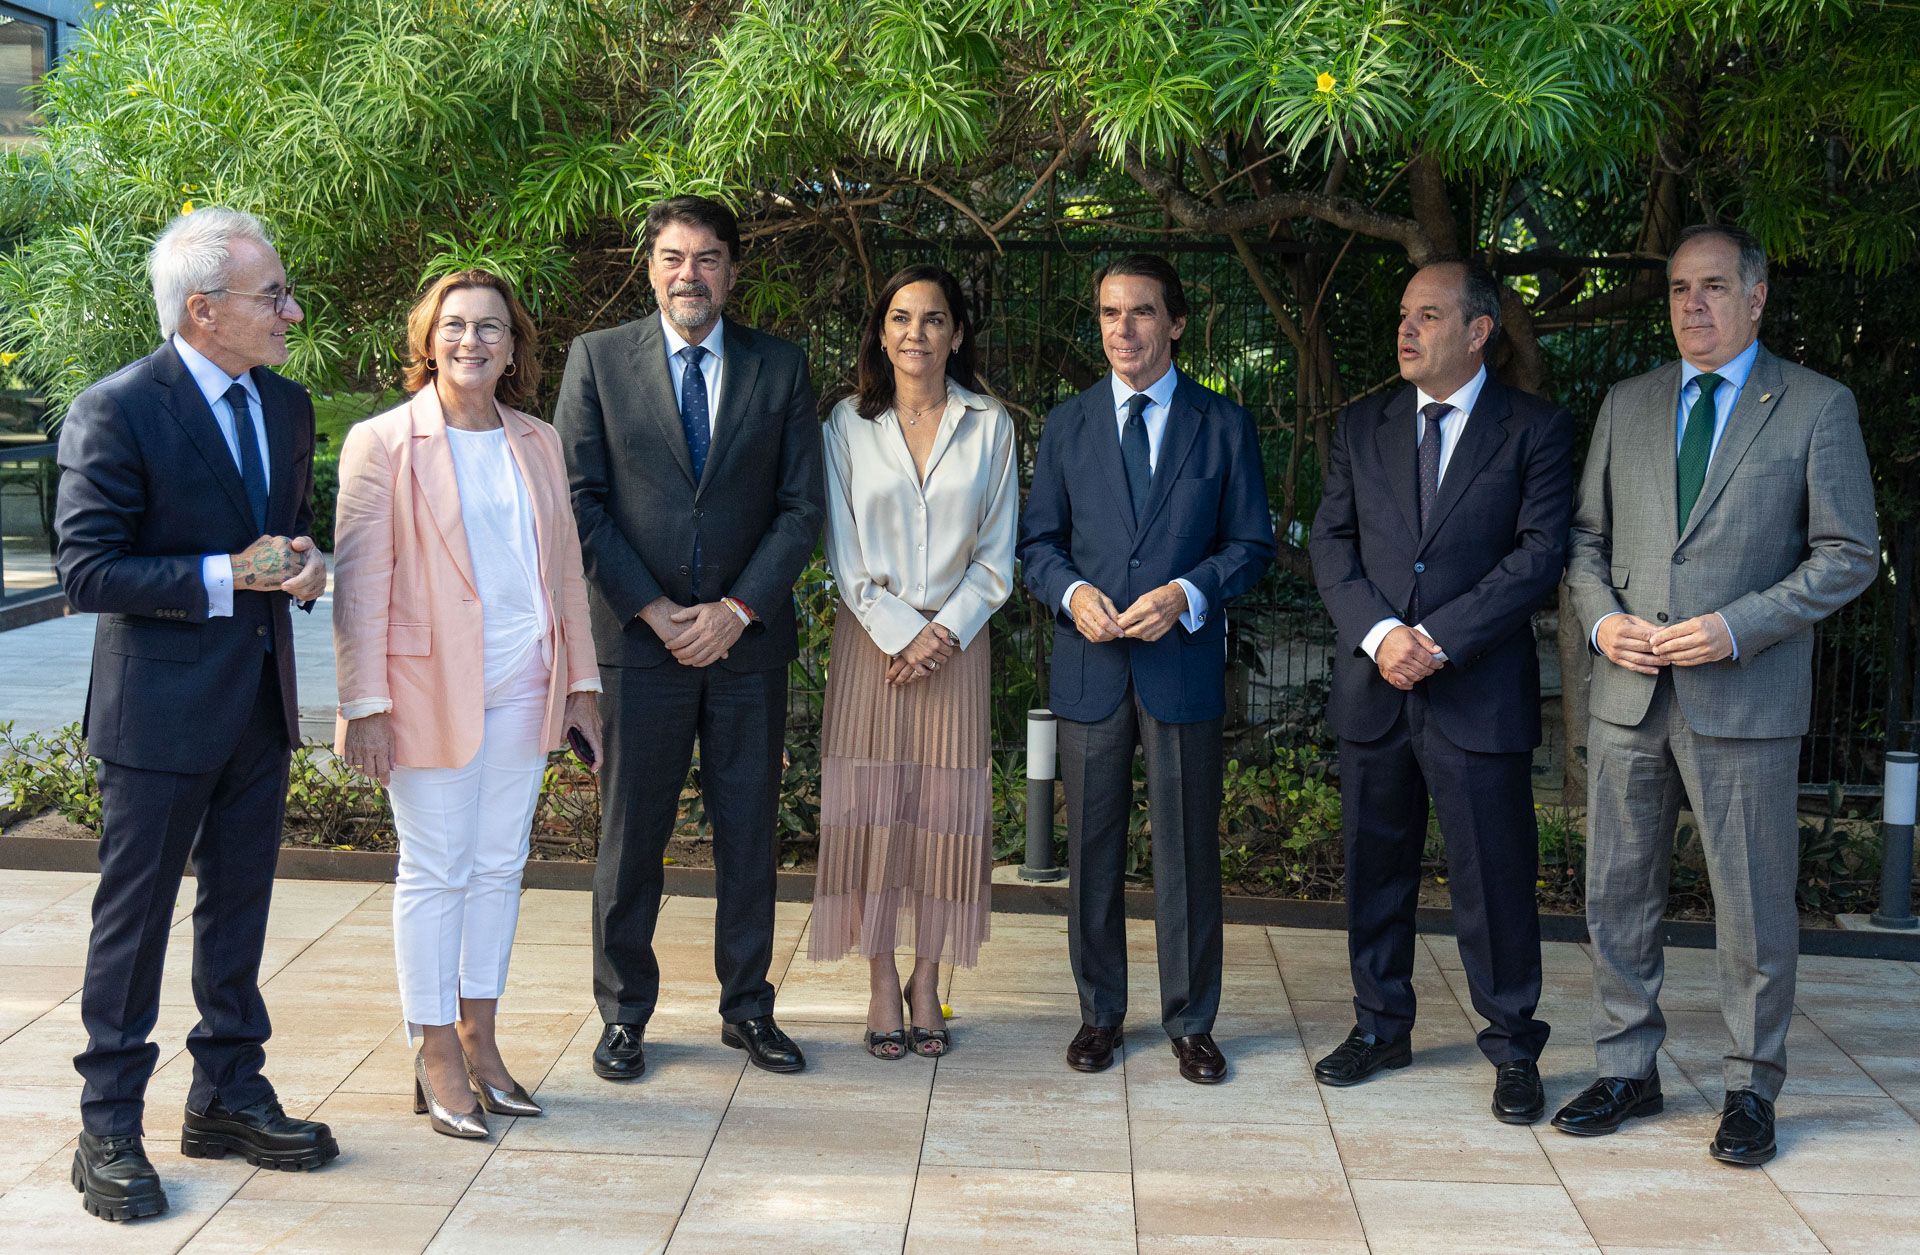 José María Aznar analiza la incertidumbre de la política nacional e internacional en un acto celebrado en Alicante